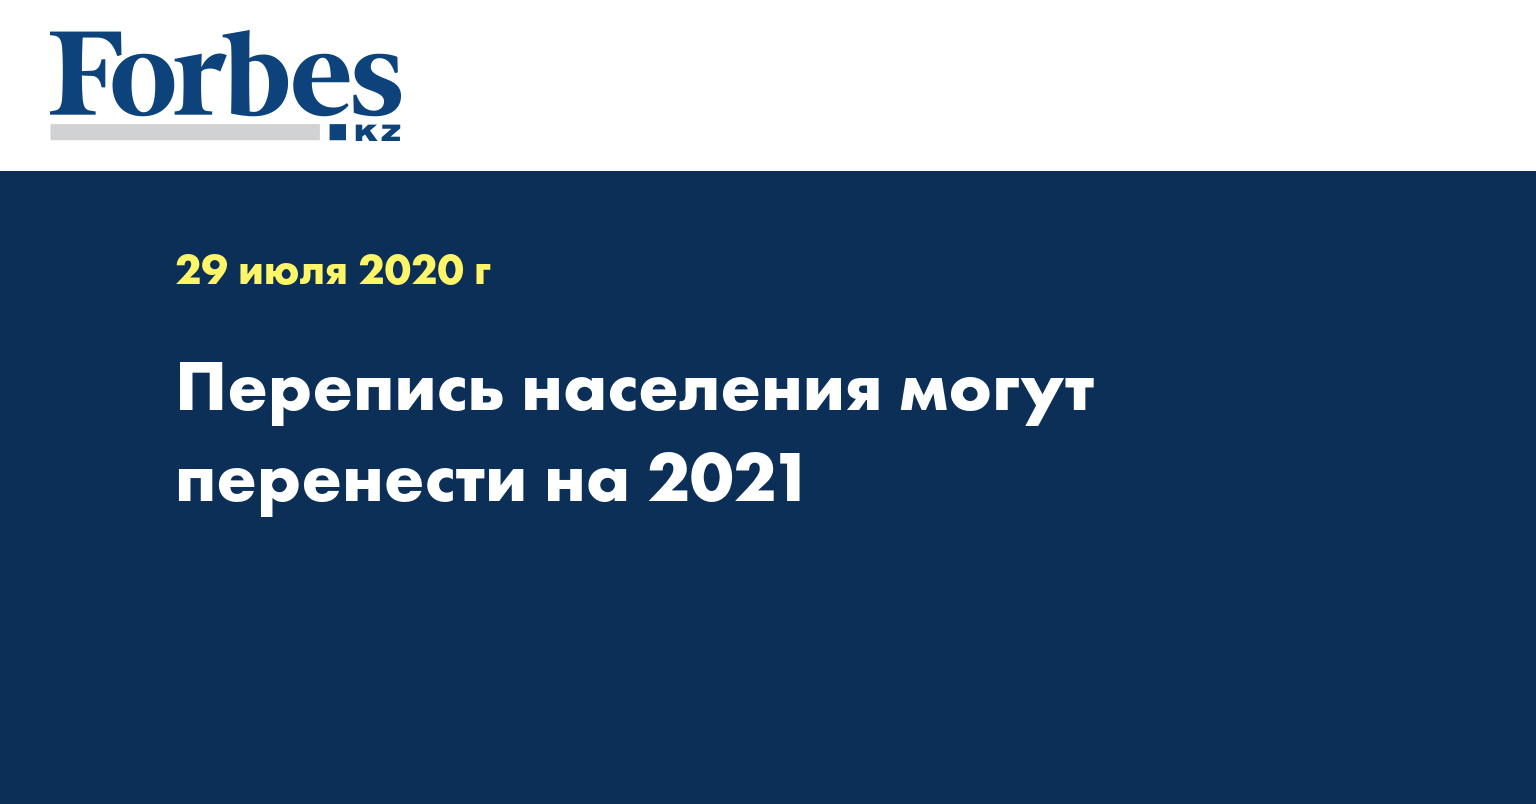  Перепись населения могут перенести на 2021 